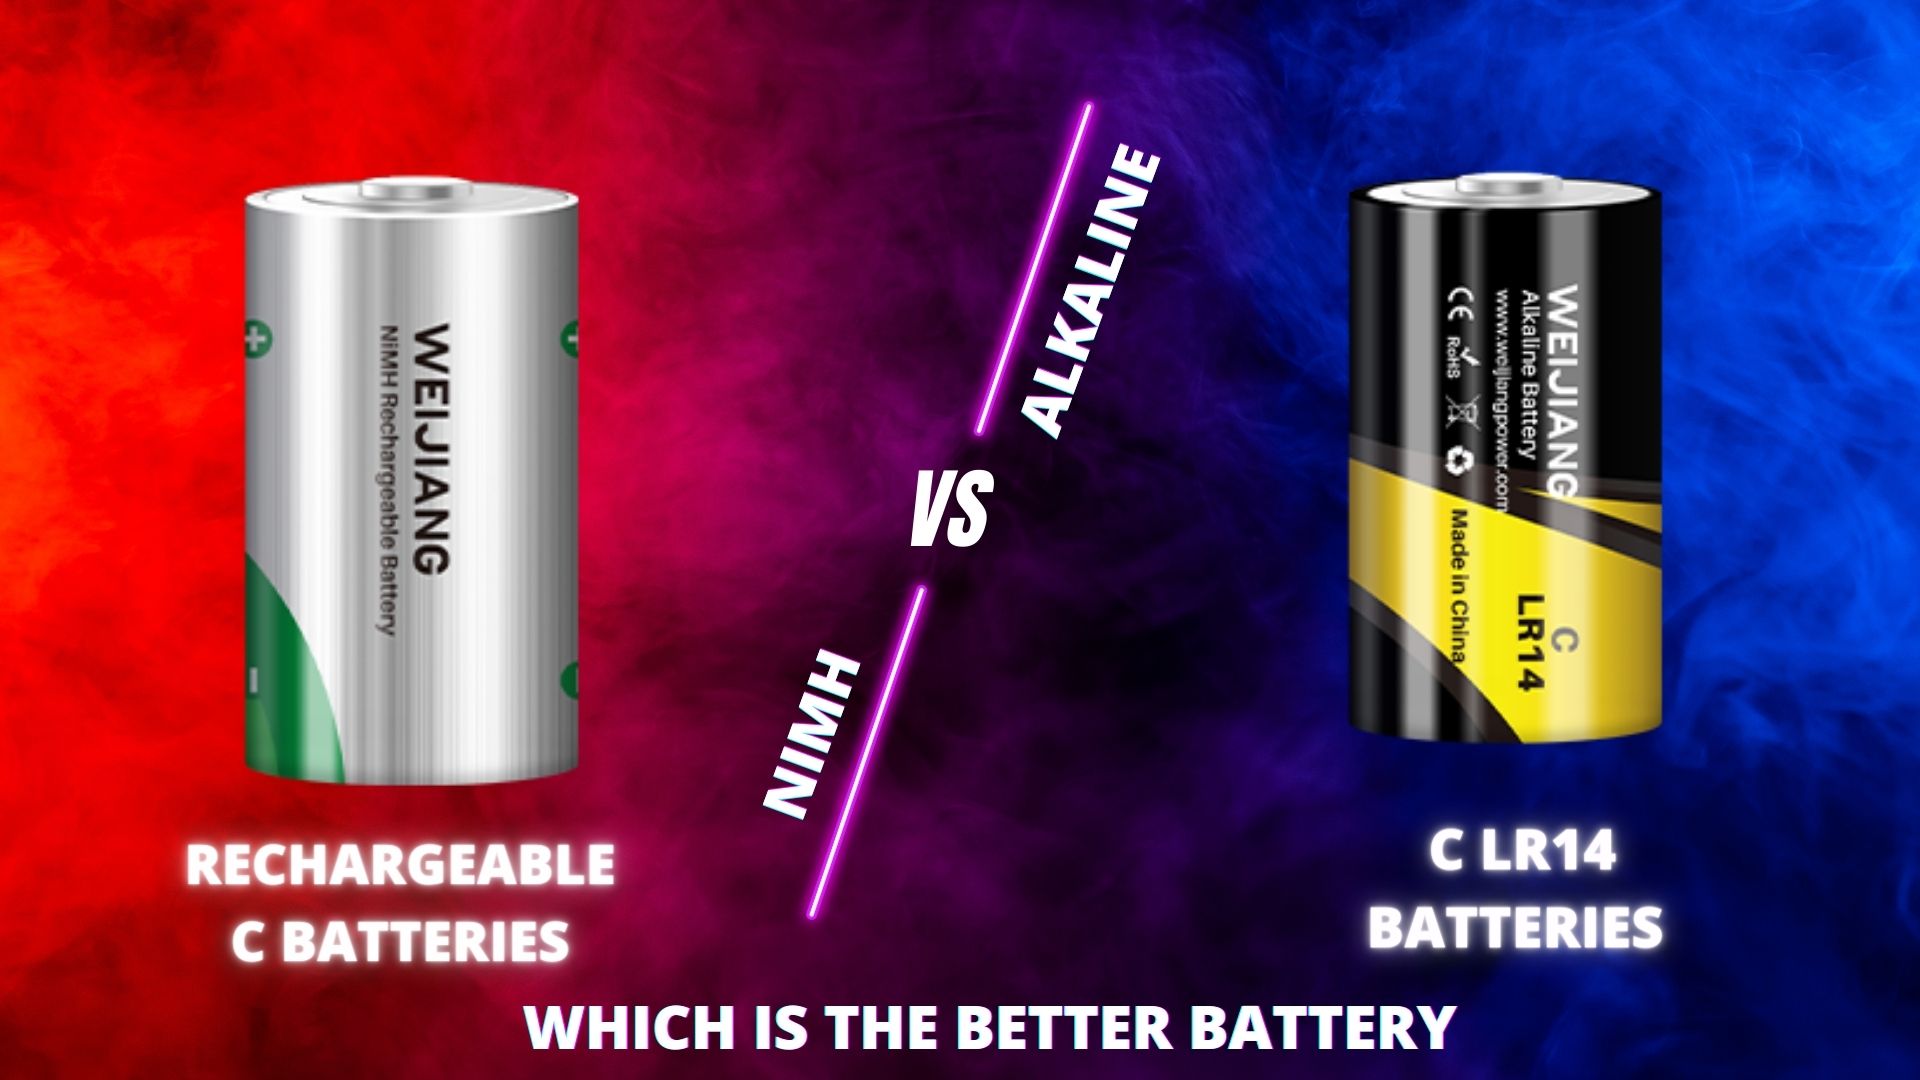 Заряддалуучу C батарейкалар жана щелочтуу C LR14 батарейкалар, бул сиздин бизнесиңиз үчүн эң жакшы C батареясы